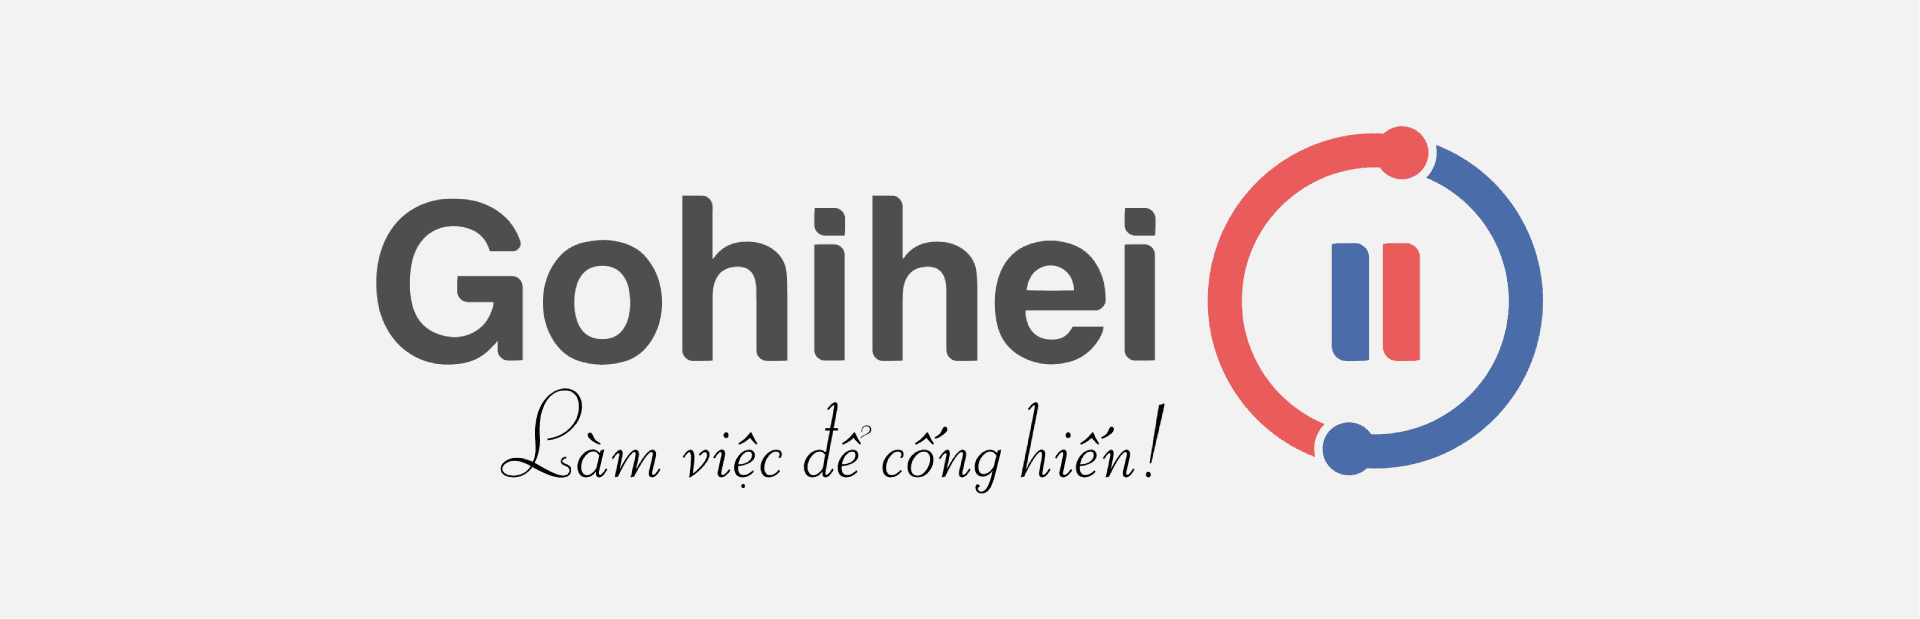 Công ty Gohihei